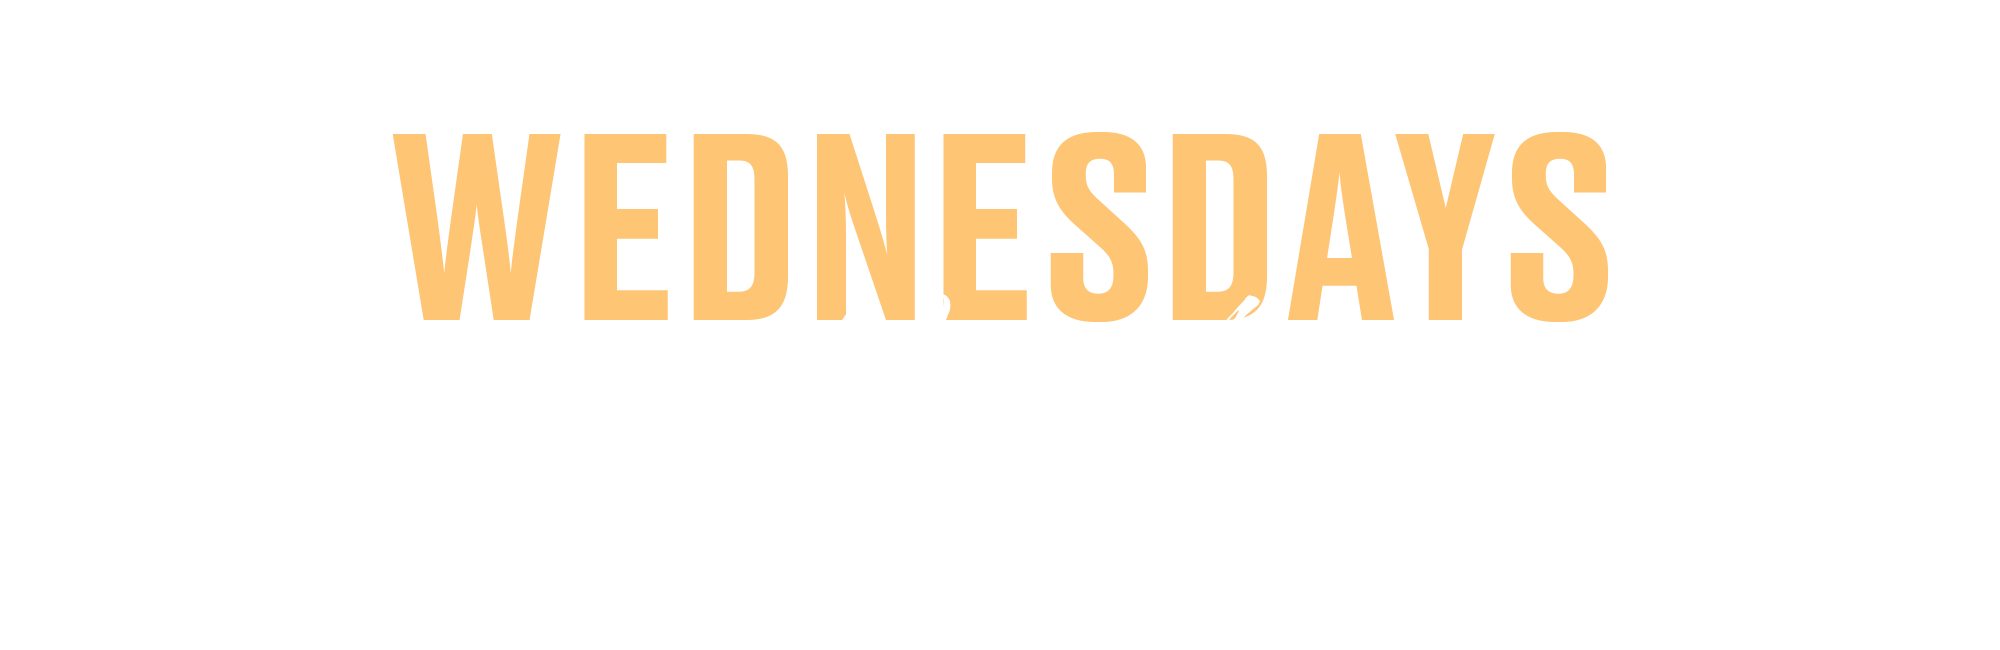 Wednesdays in November